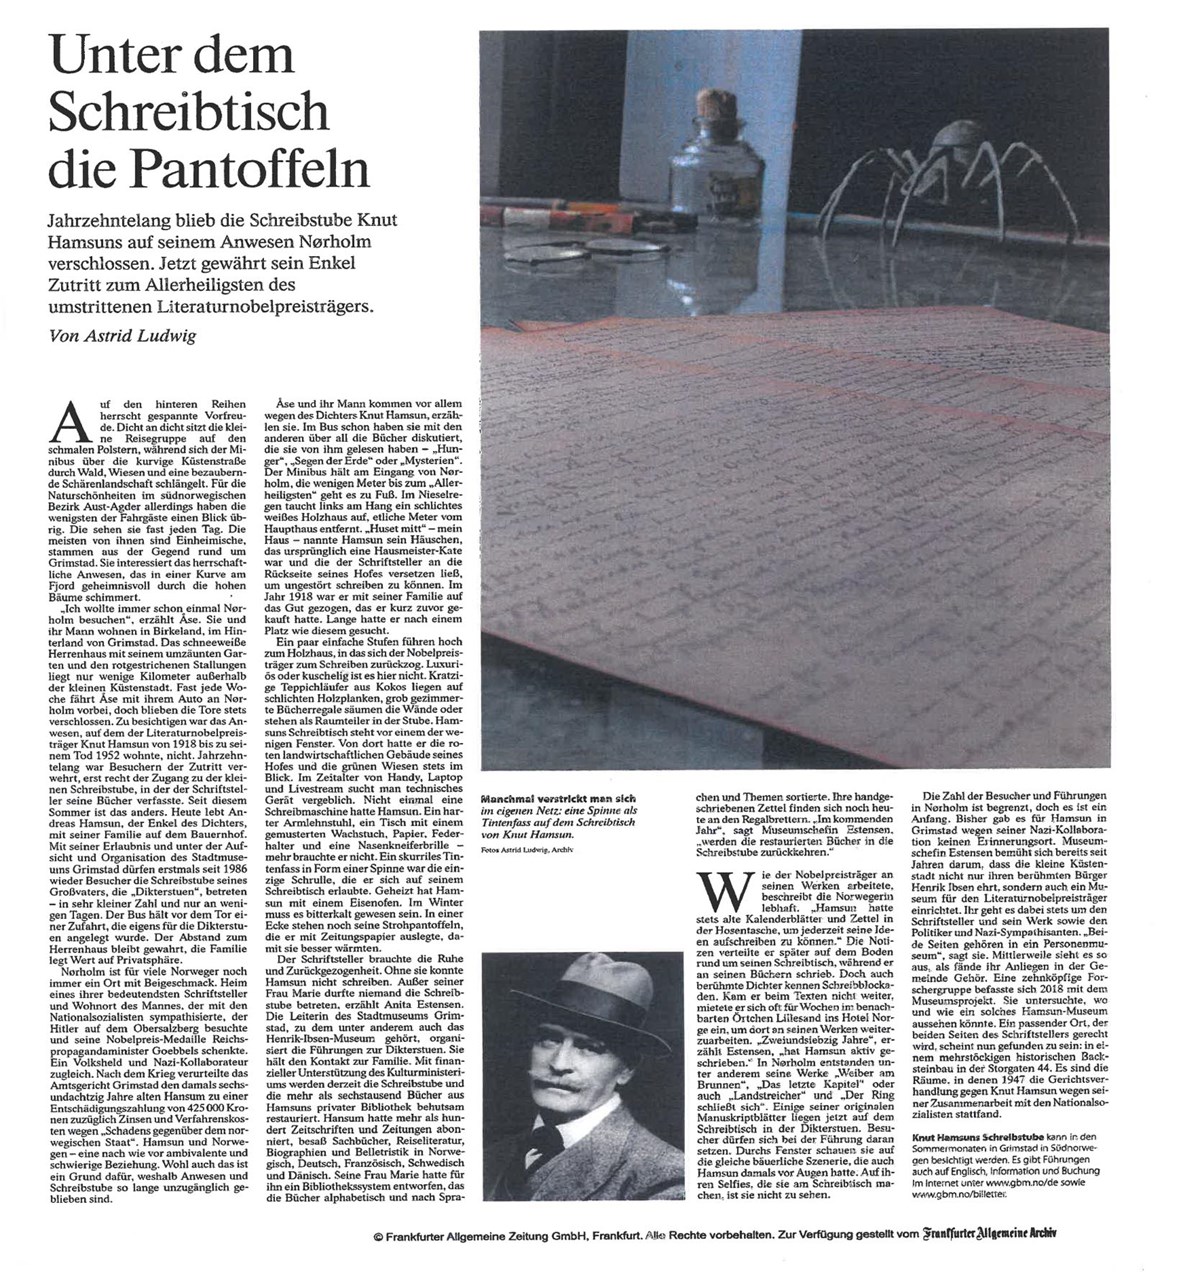 Das Bild zeigt ein Faksimile eines Zeitungsartikels über Knut Hamsun und die Gelegenheit, die Dichterstube vor seinem Gut Nørholm zu besichtigen. 
Der Artikel wurde von Astrid Ludwig verfasst und in der FAZ veröffentlicht.